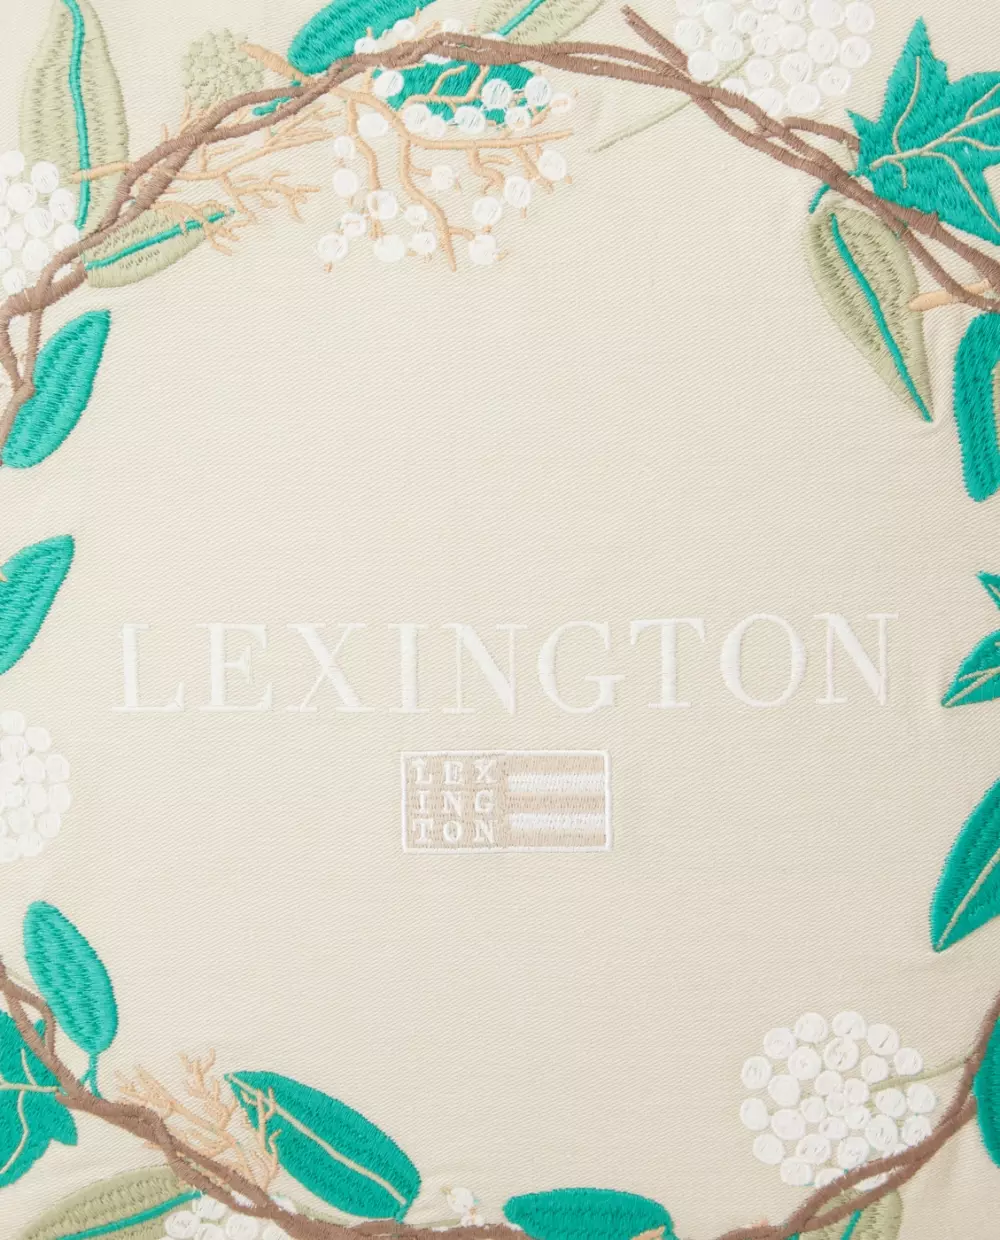 Lexington Putetrekk Med Krans, 7321301689842, 112311252750-SH25, Tekstil, Puter og Putetrekk, Lexington, Wreath Logo Organic Cotton Twill Pillow Cover